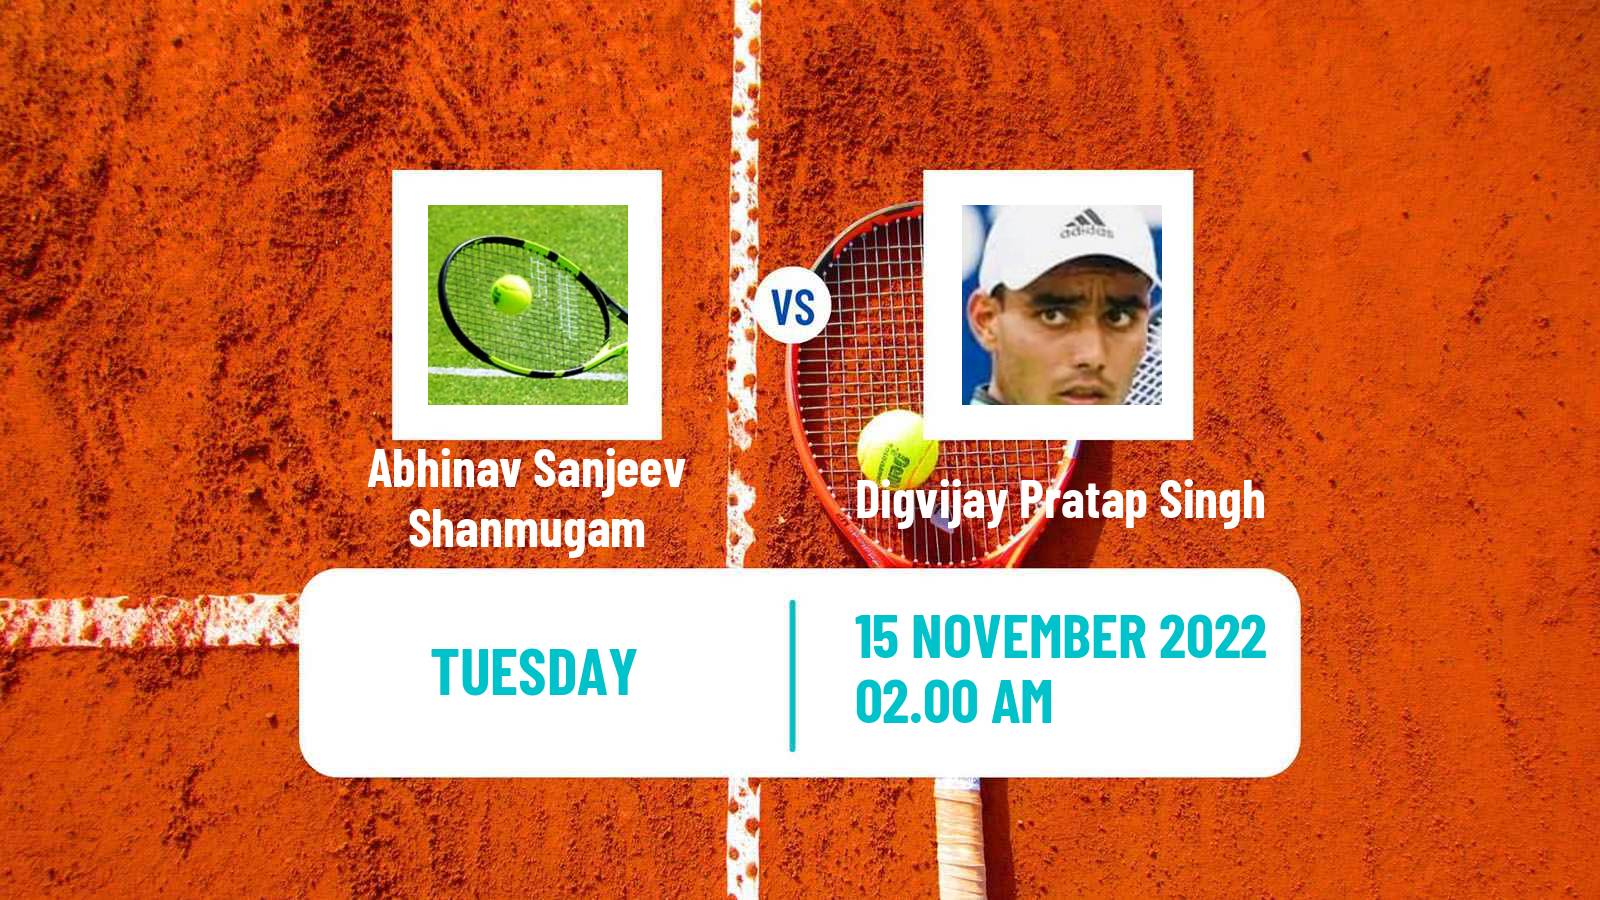 Tennis ITF Tournaments Abhinav Sanjeev Shanmugam - Digvijay Pratap Singh